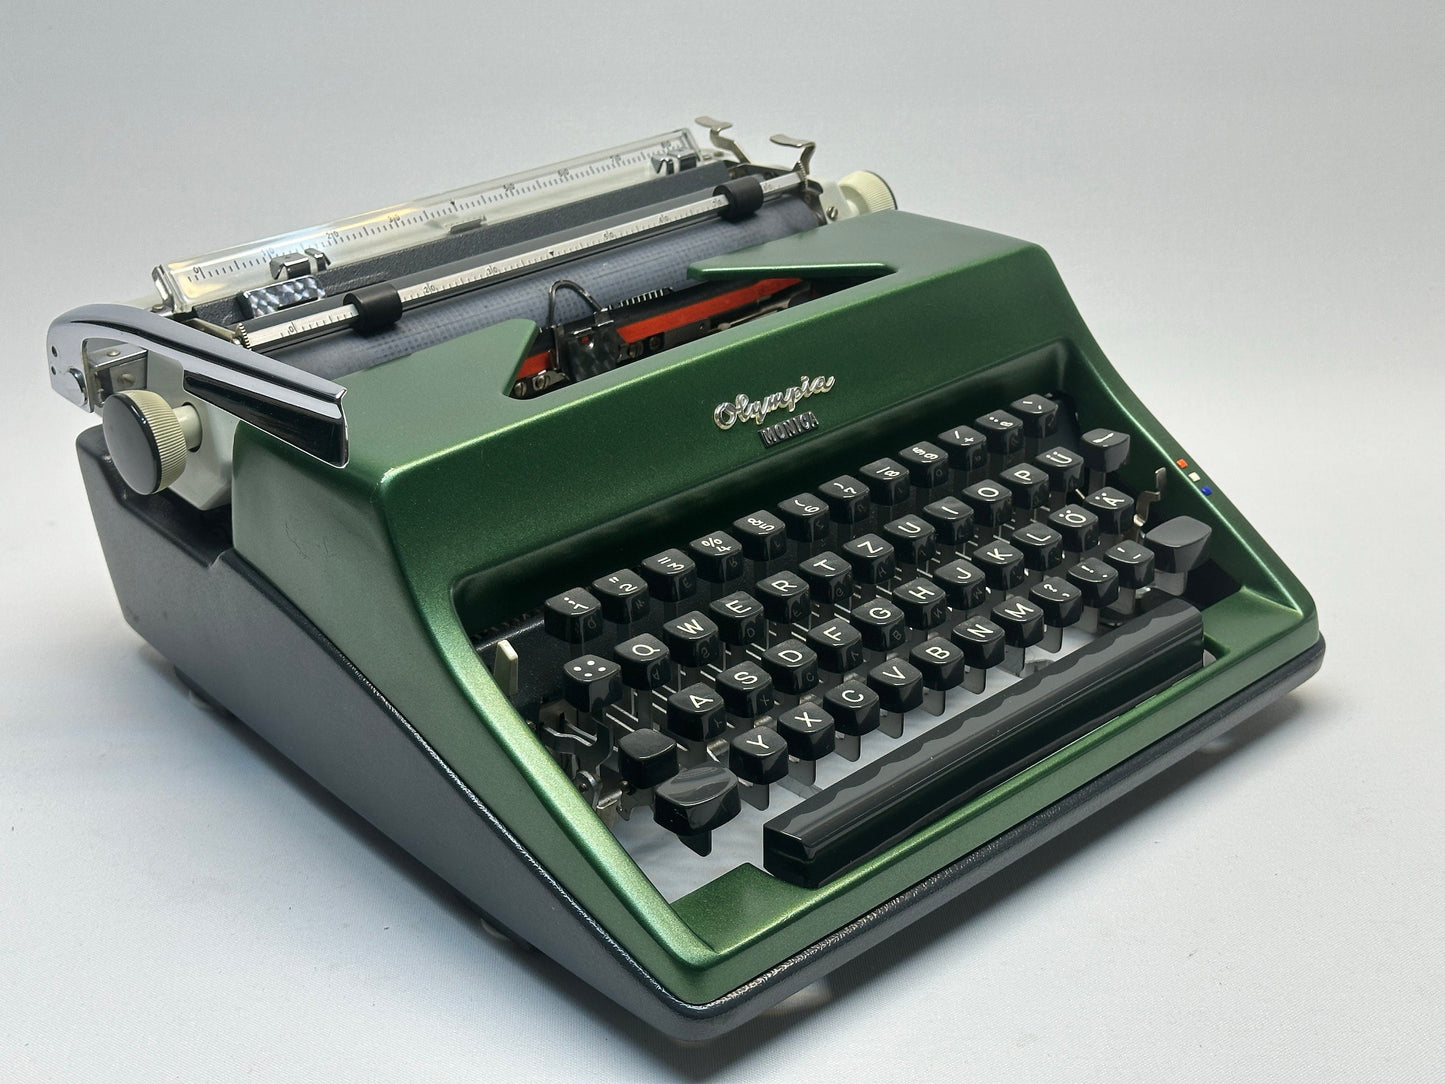 Nice Gift!-1960 Olympia Monica Typewriter in Matte Green,Antique Typewriter, Working Typewriter, Leather Bag